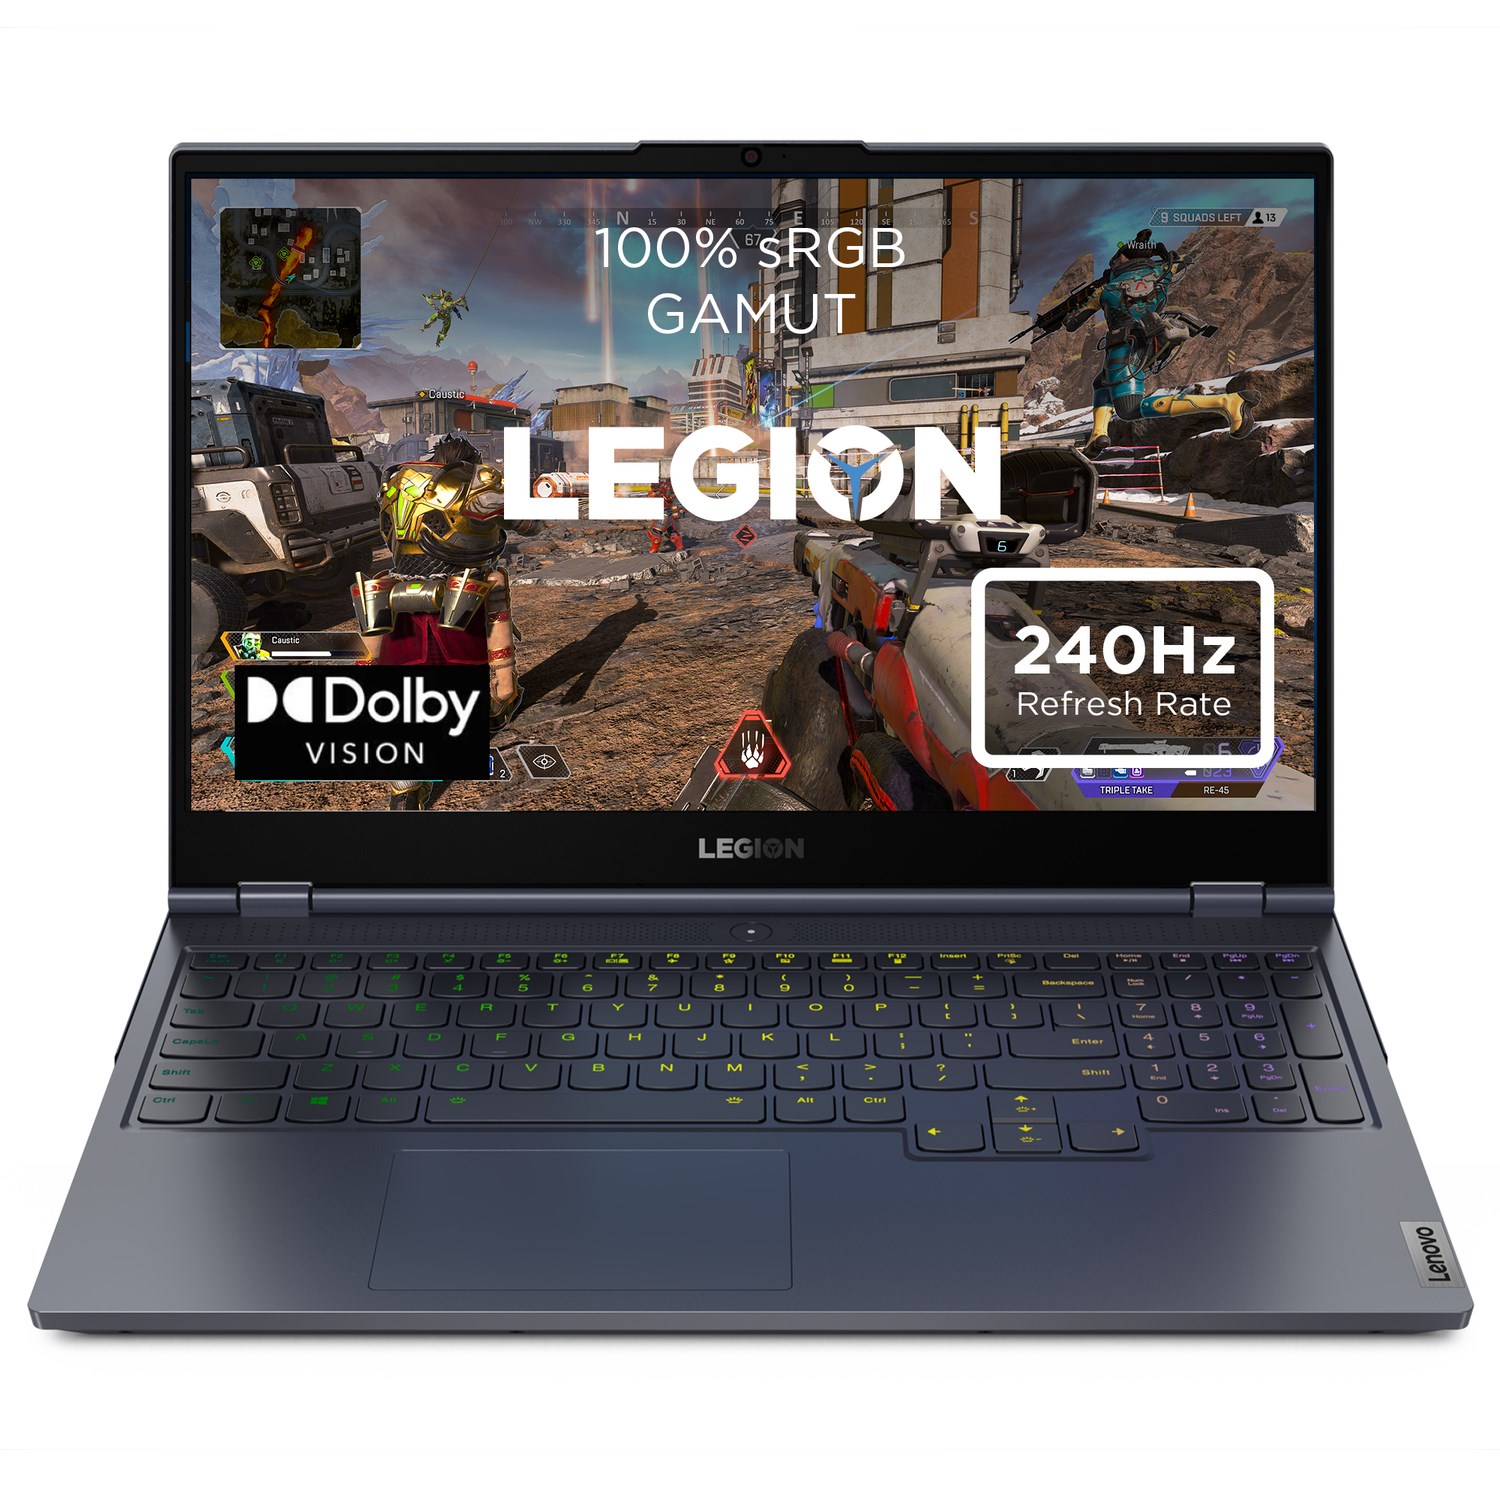 Lenovo ra mắt loạt laptop gaming Legion 7 Series mới nhất với hiệu năng đỉnh cao - Ảnh 4.